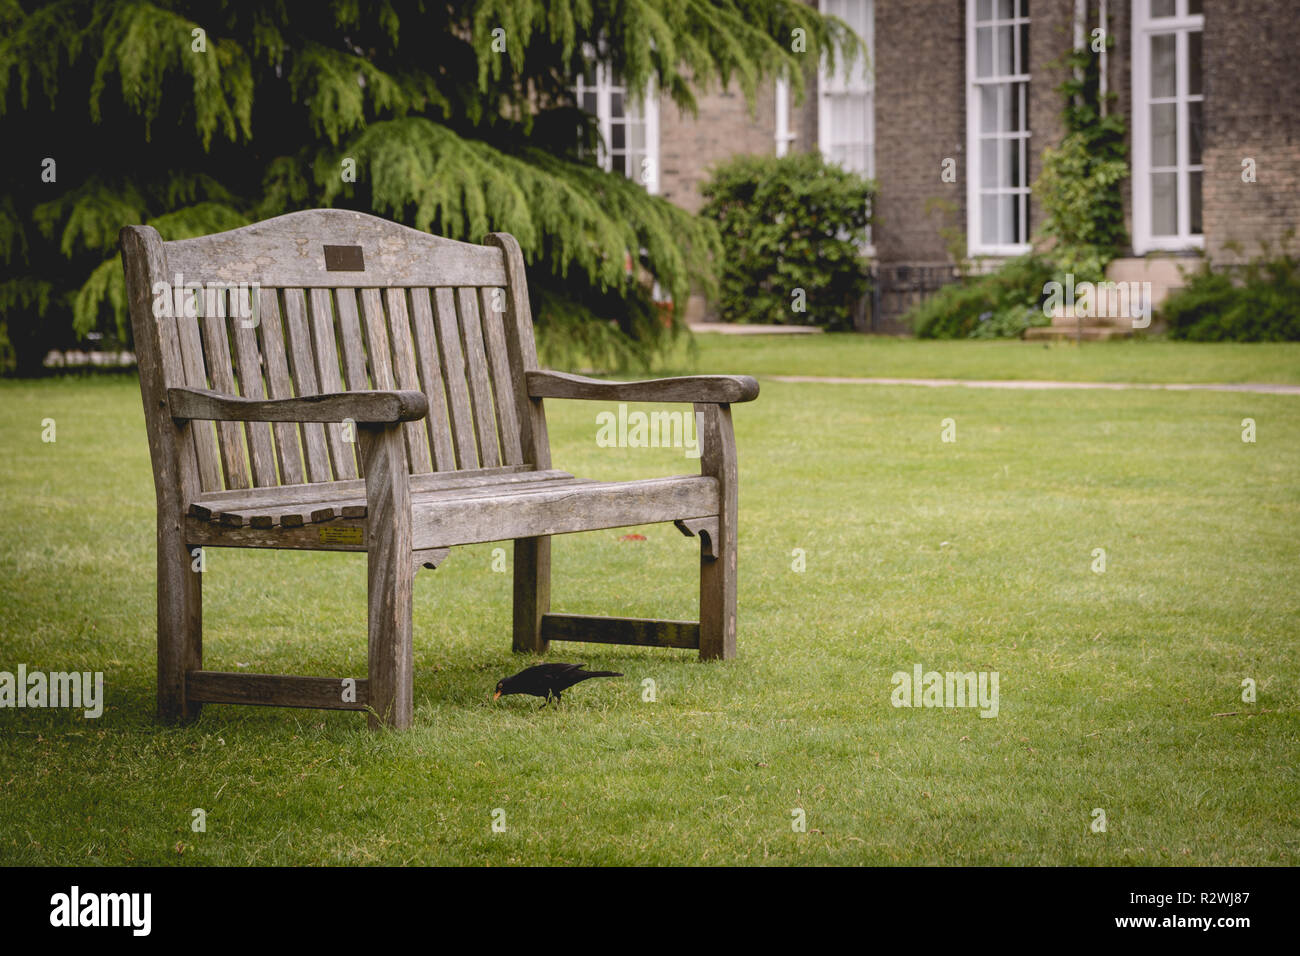 Cambridge, Regno Unito - Febbraio, 2019. Banchi vuoti nel giardino del Downing College, un costituente college della University of Cambridge. Foto Stock